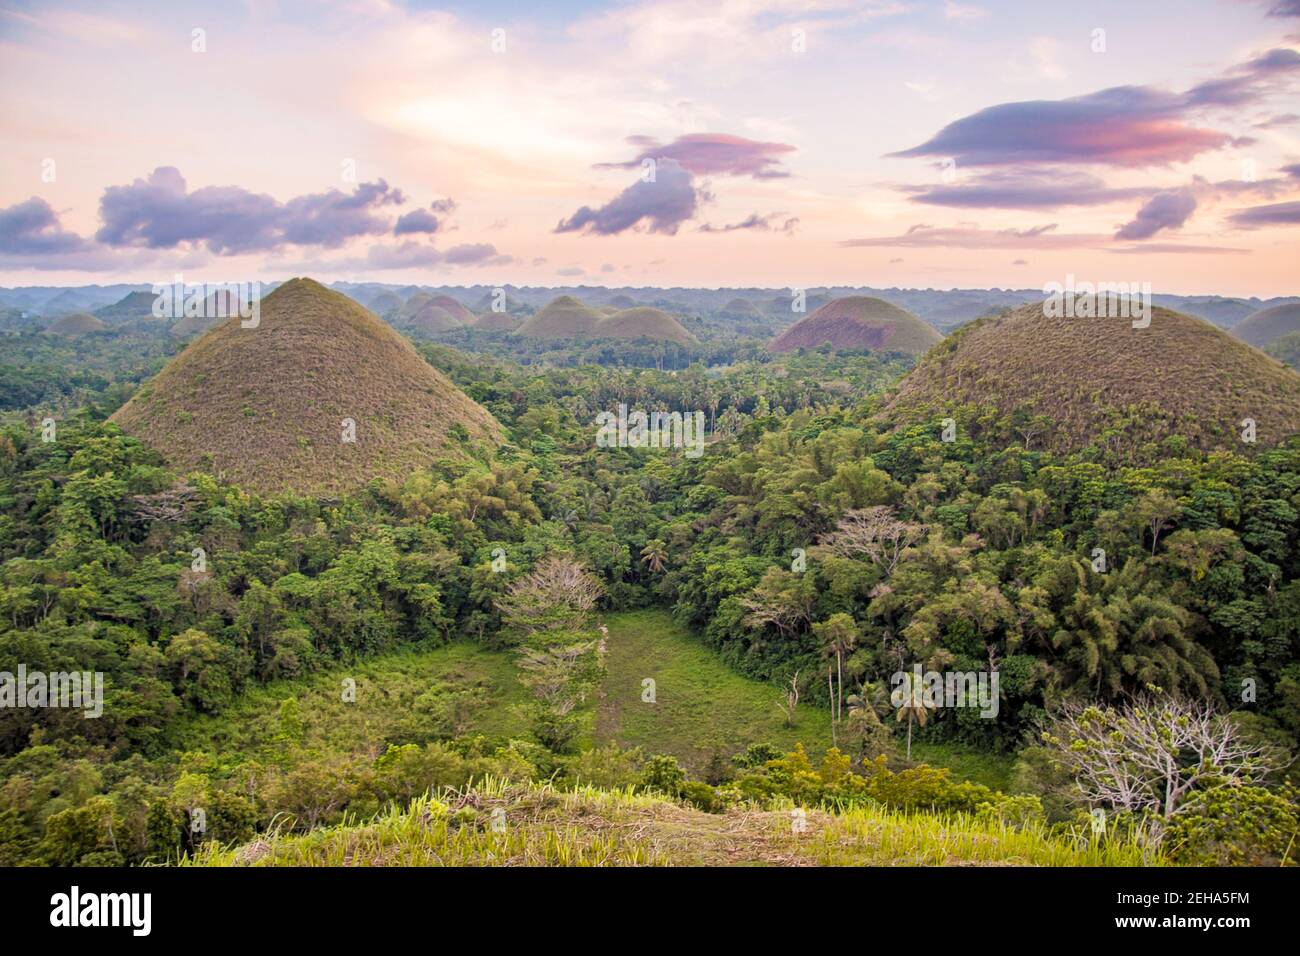 Die Chocolate Hills sind eine geologische Formation im Bohol Provinz verteilen sich auf die Städte.jpg|, Carmen, und Batuan in den Philippinen. Es Stockfoto